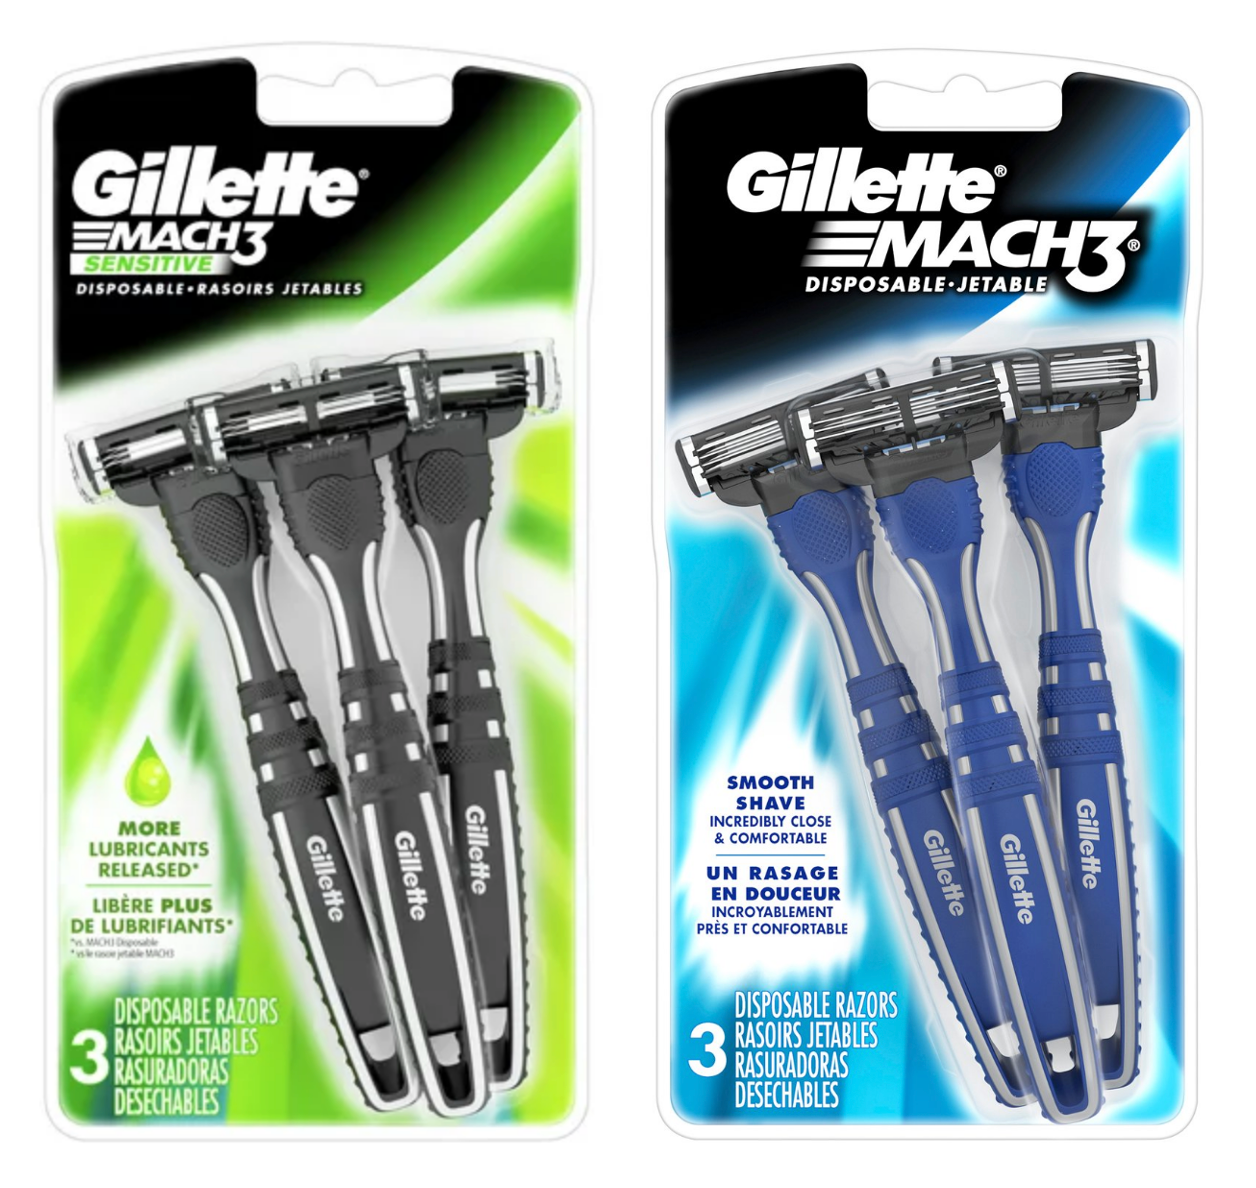 Gillette Mach3 Men's Disposable Razors - 24 count